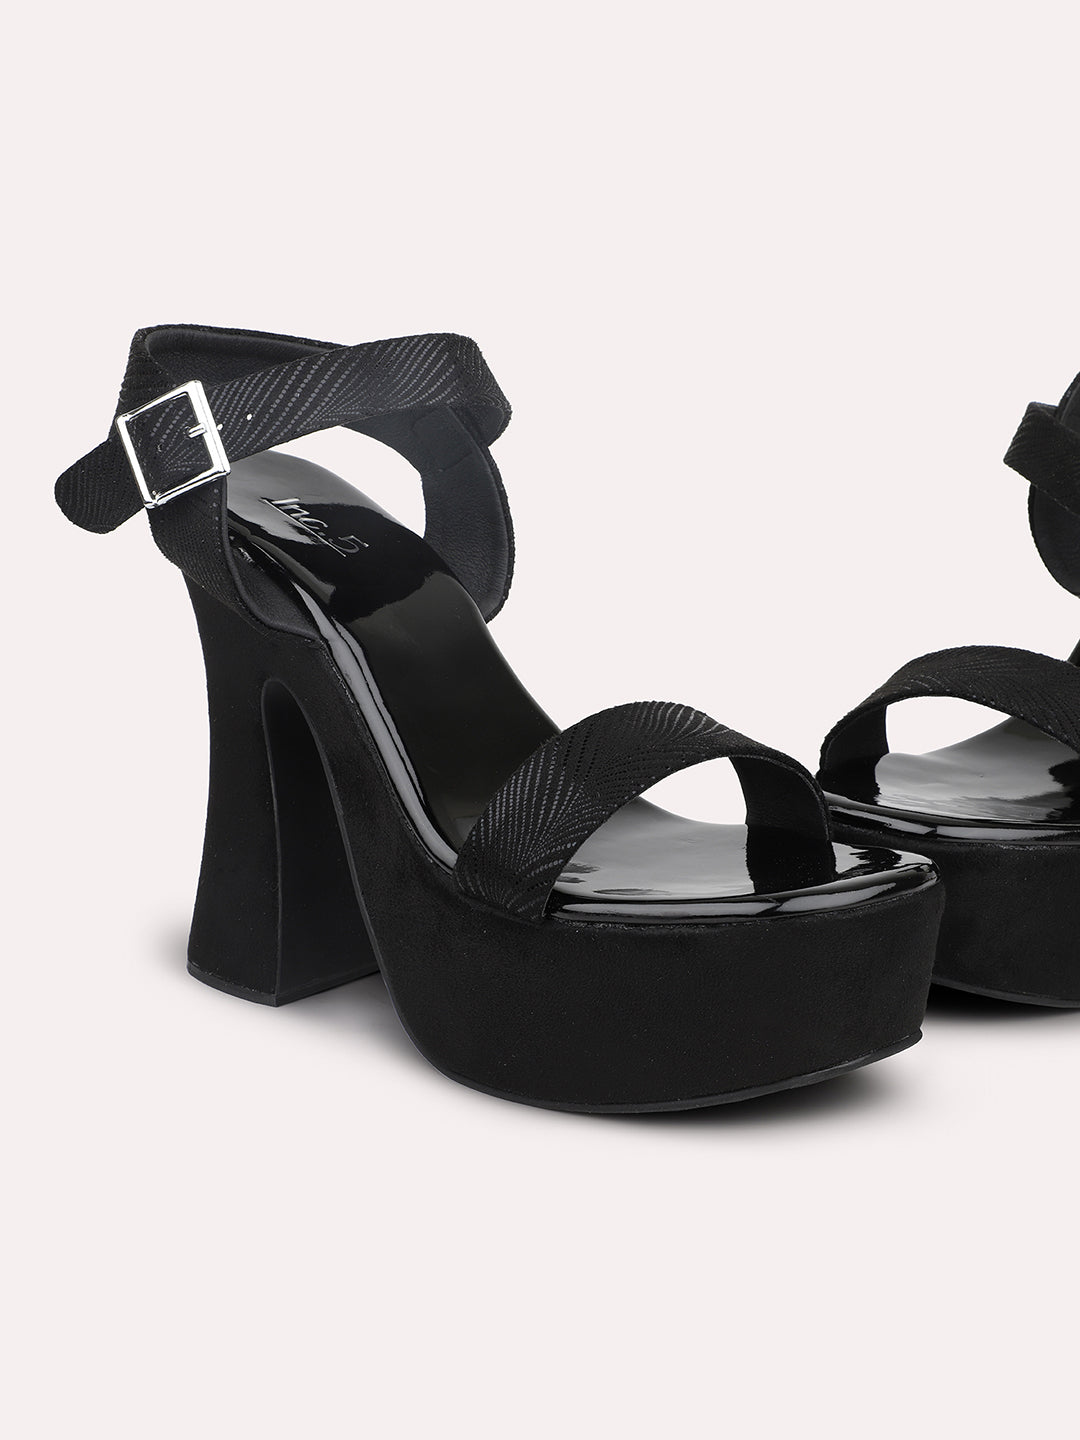 Buy Now , Women Beige Platform Heels – Inc5 Shoes